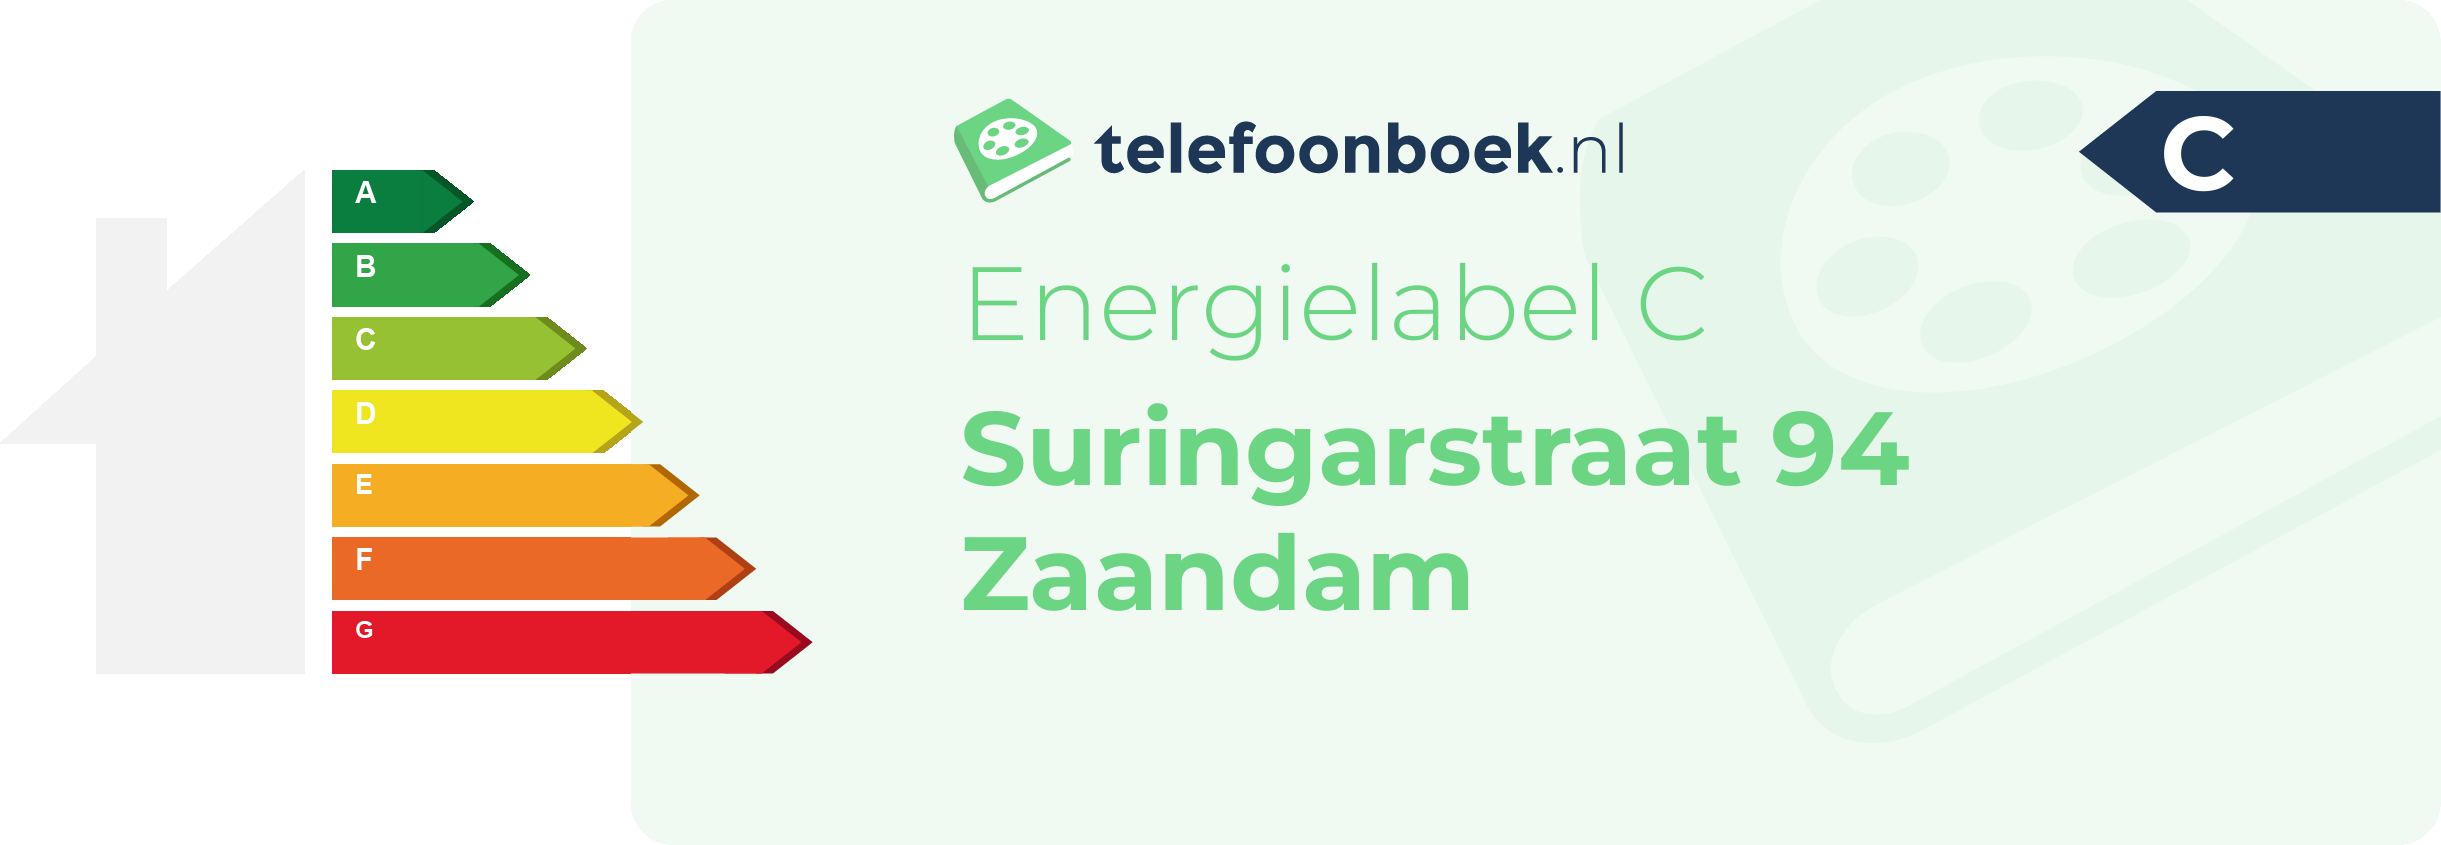 Energielabel Suringarstraat 94 Zaandam